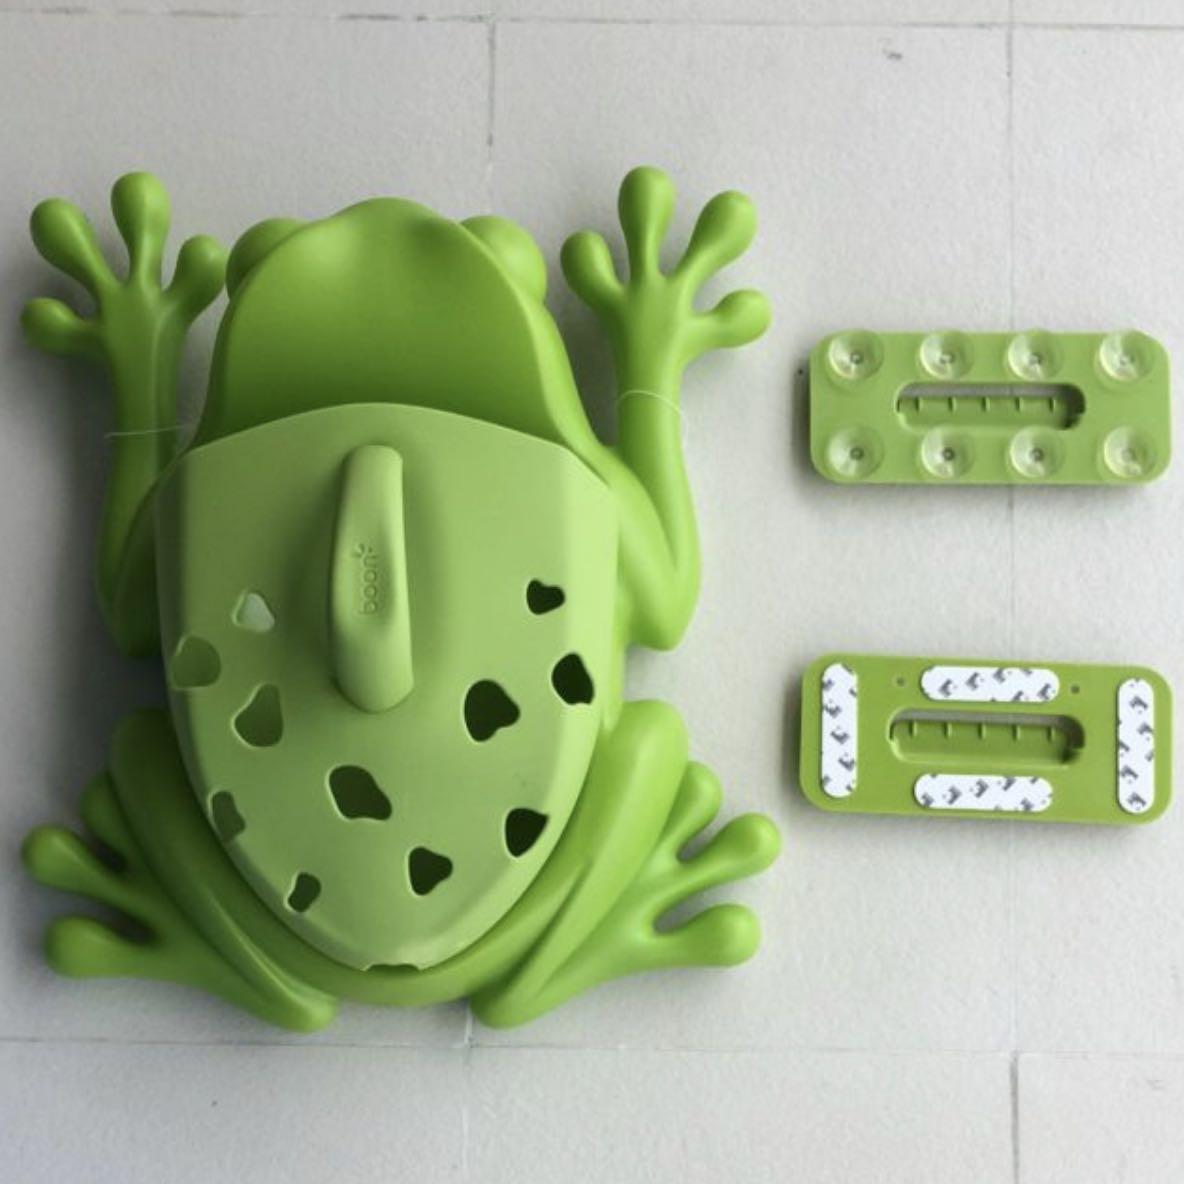 boon frog bath toy holder